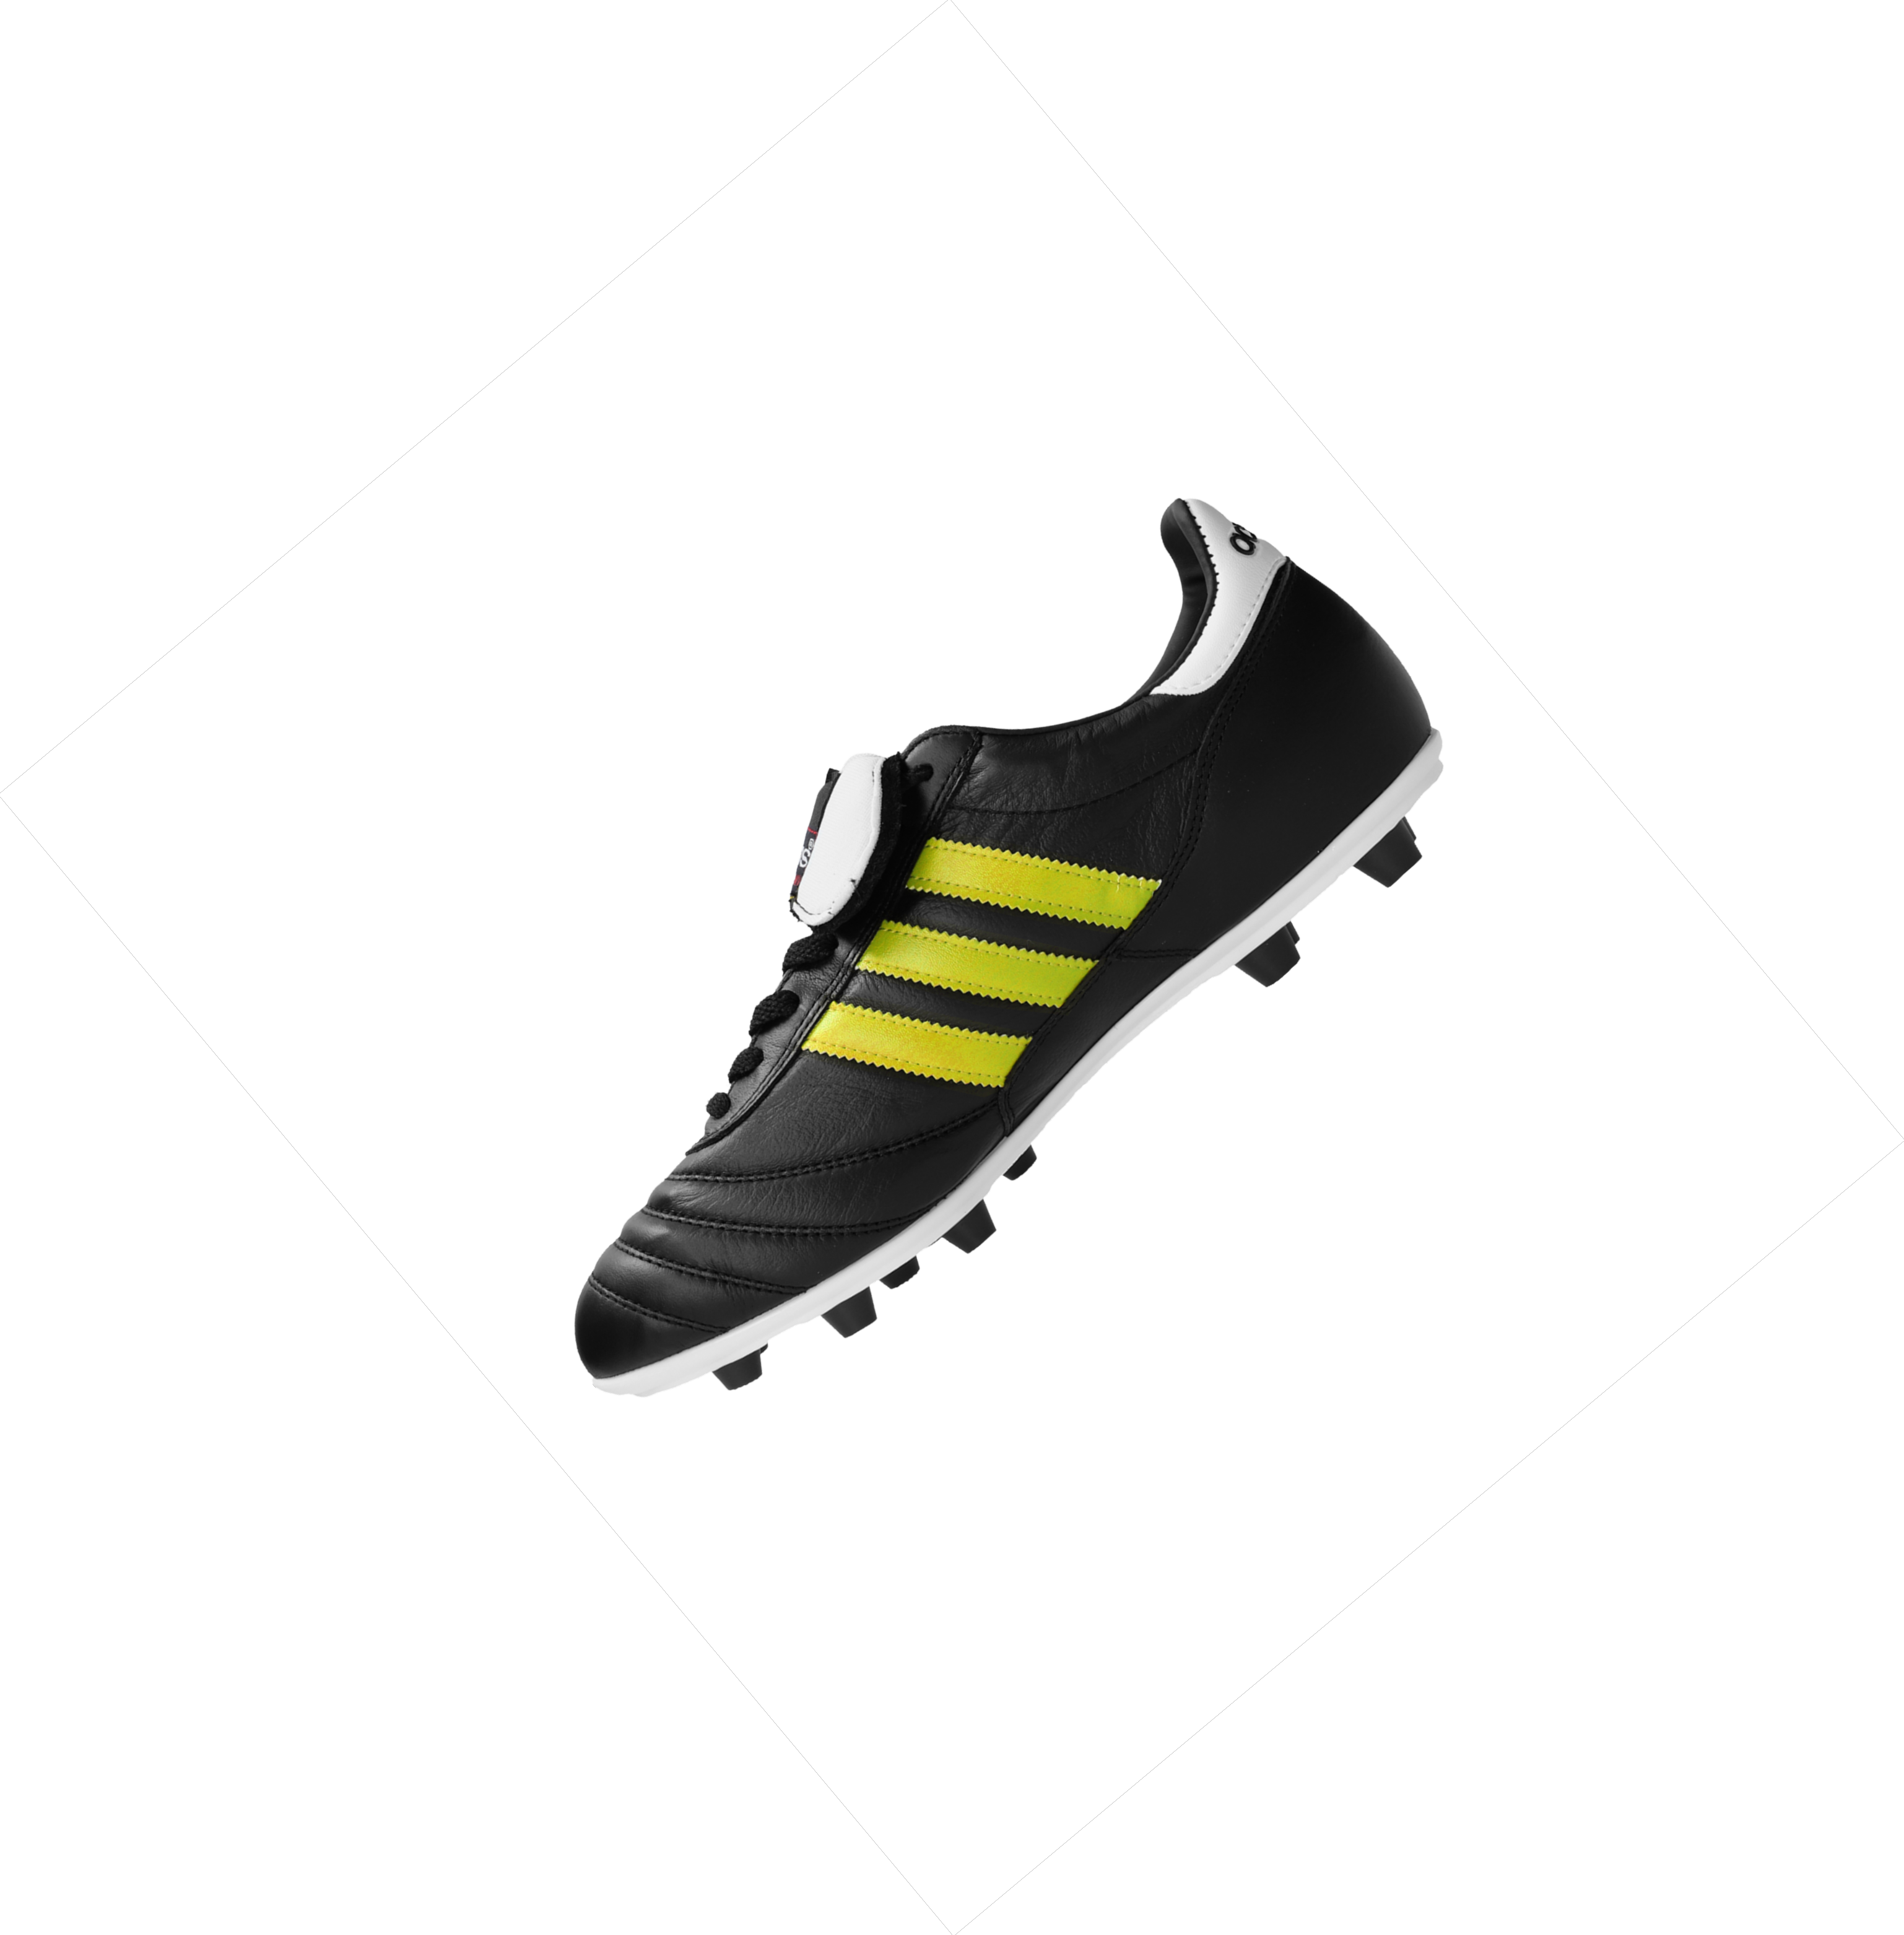 Футболни обувки adidas COPA MUNDIAL FG